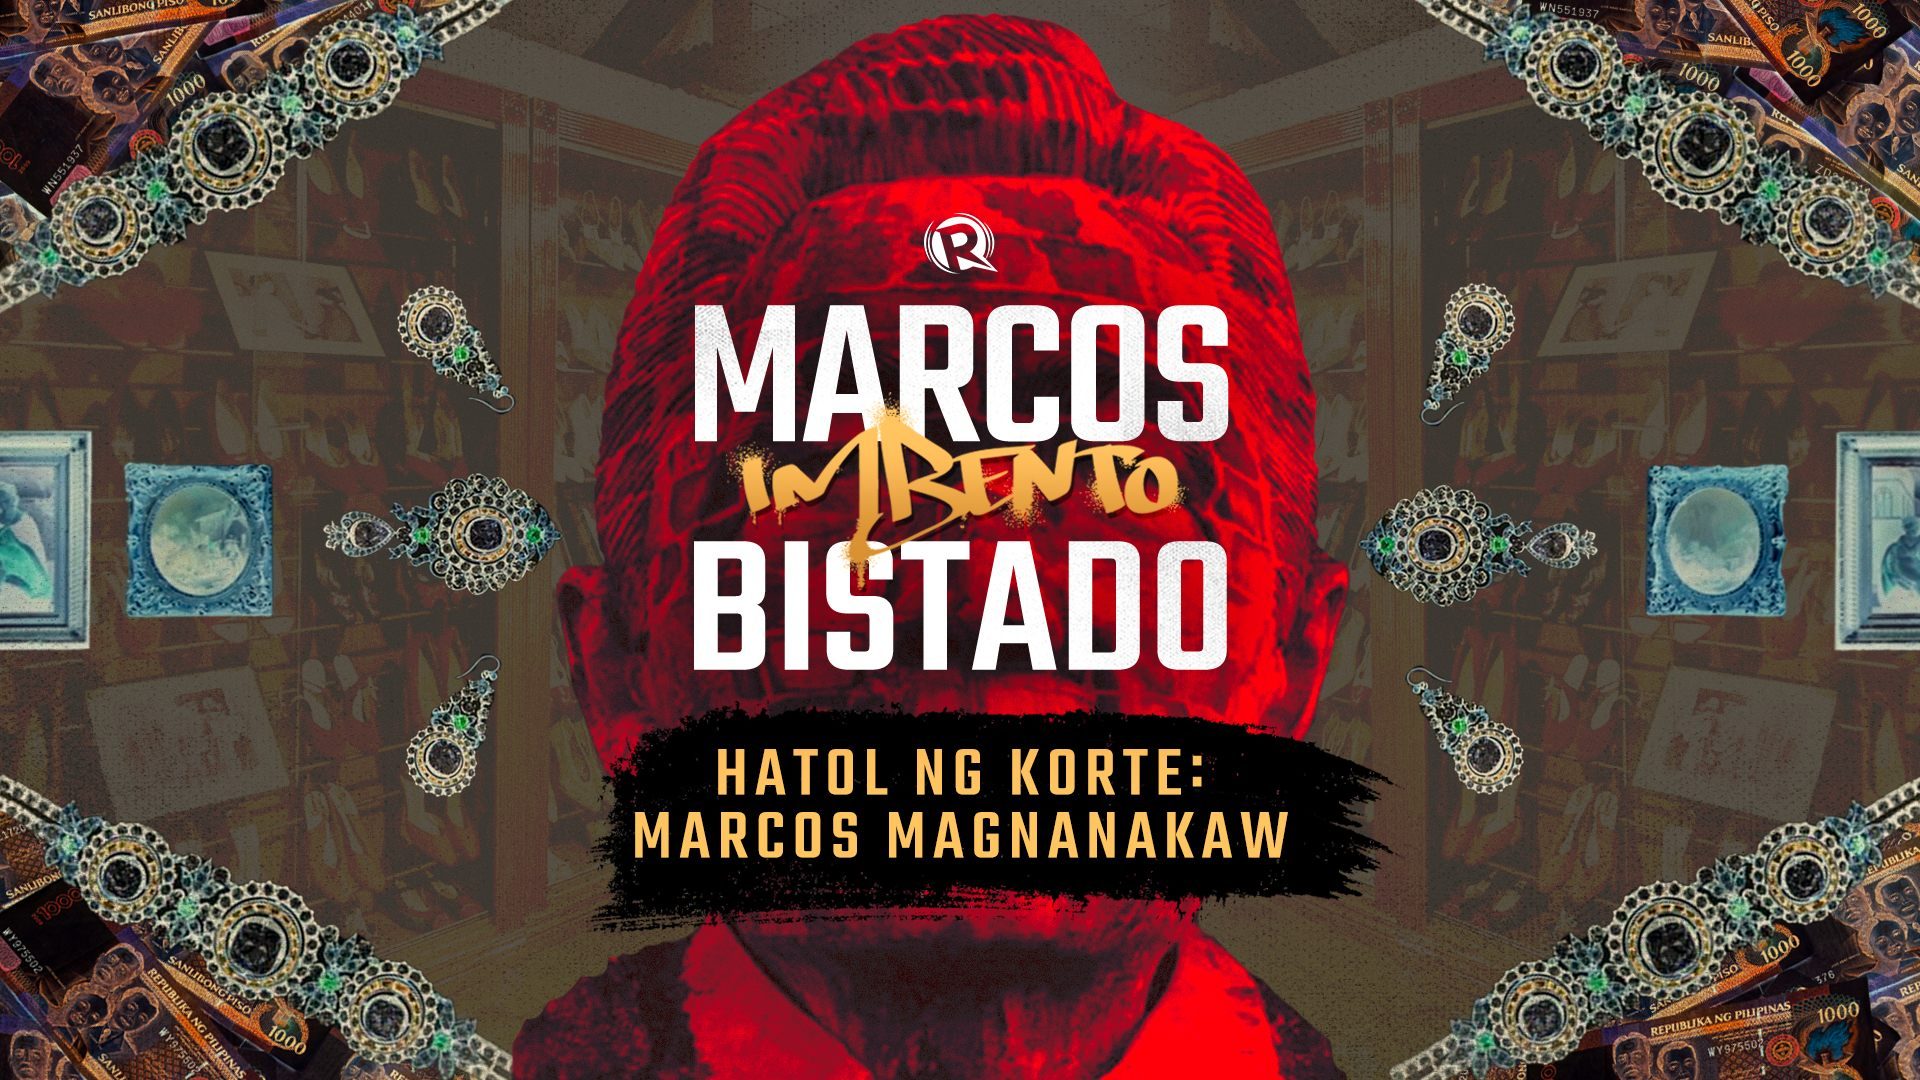 Marcos Imbento, Bistado: Convicted na magnanakaw kahit hindi nakakulong